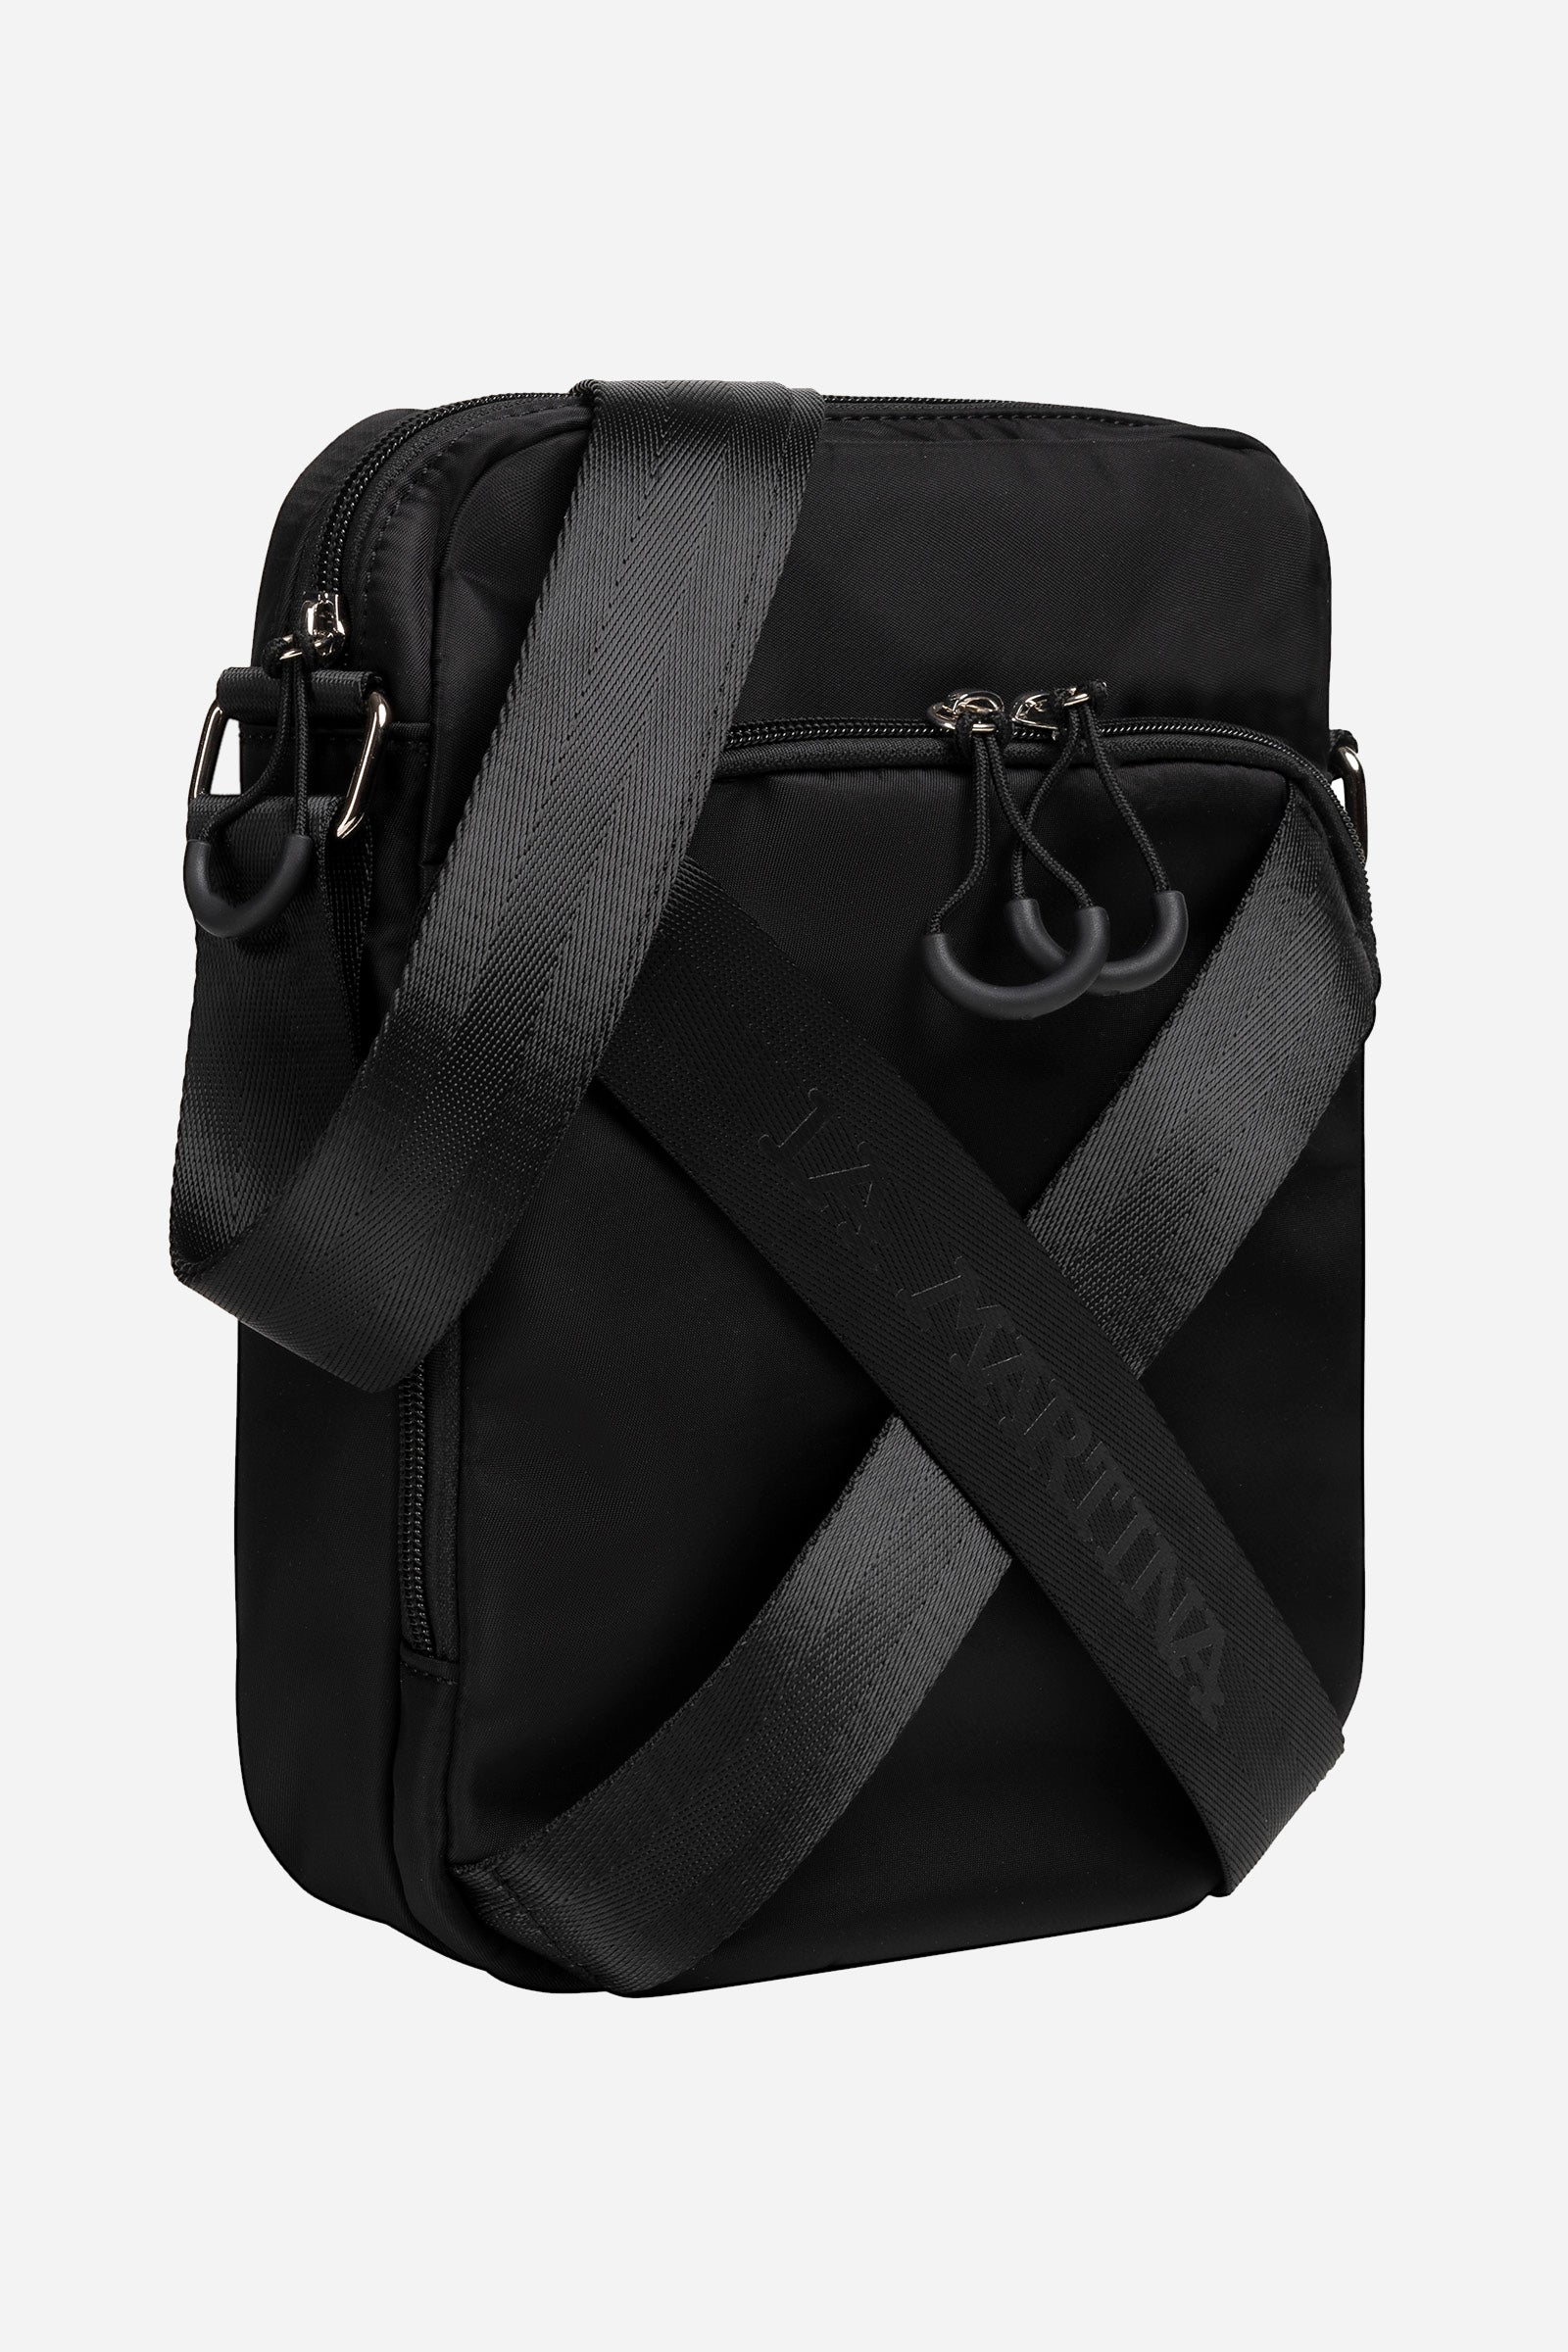 Men's shoulder bag in nylon - Thor